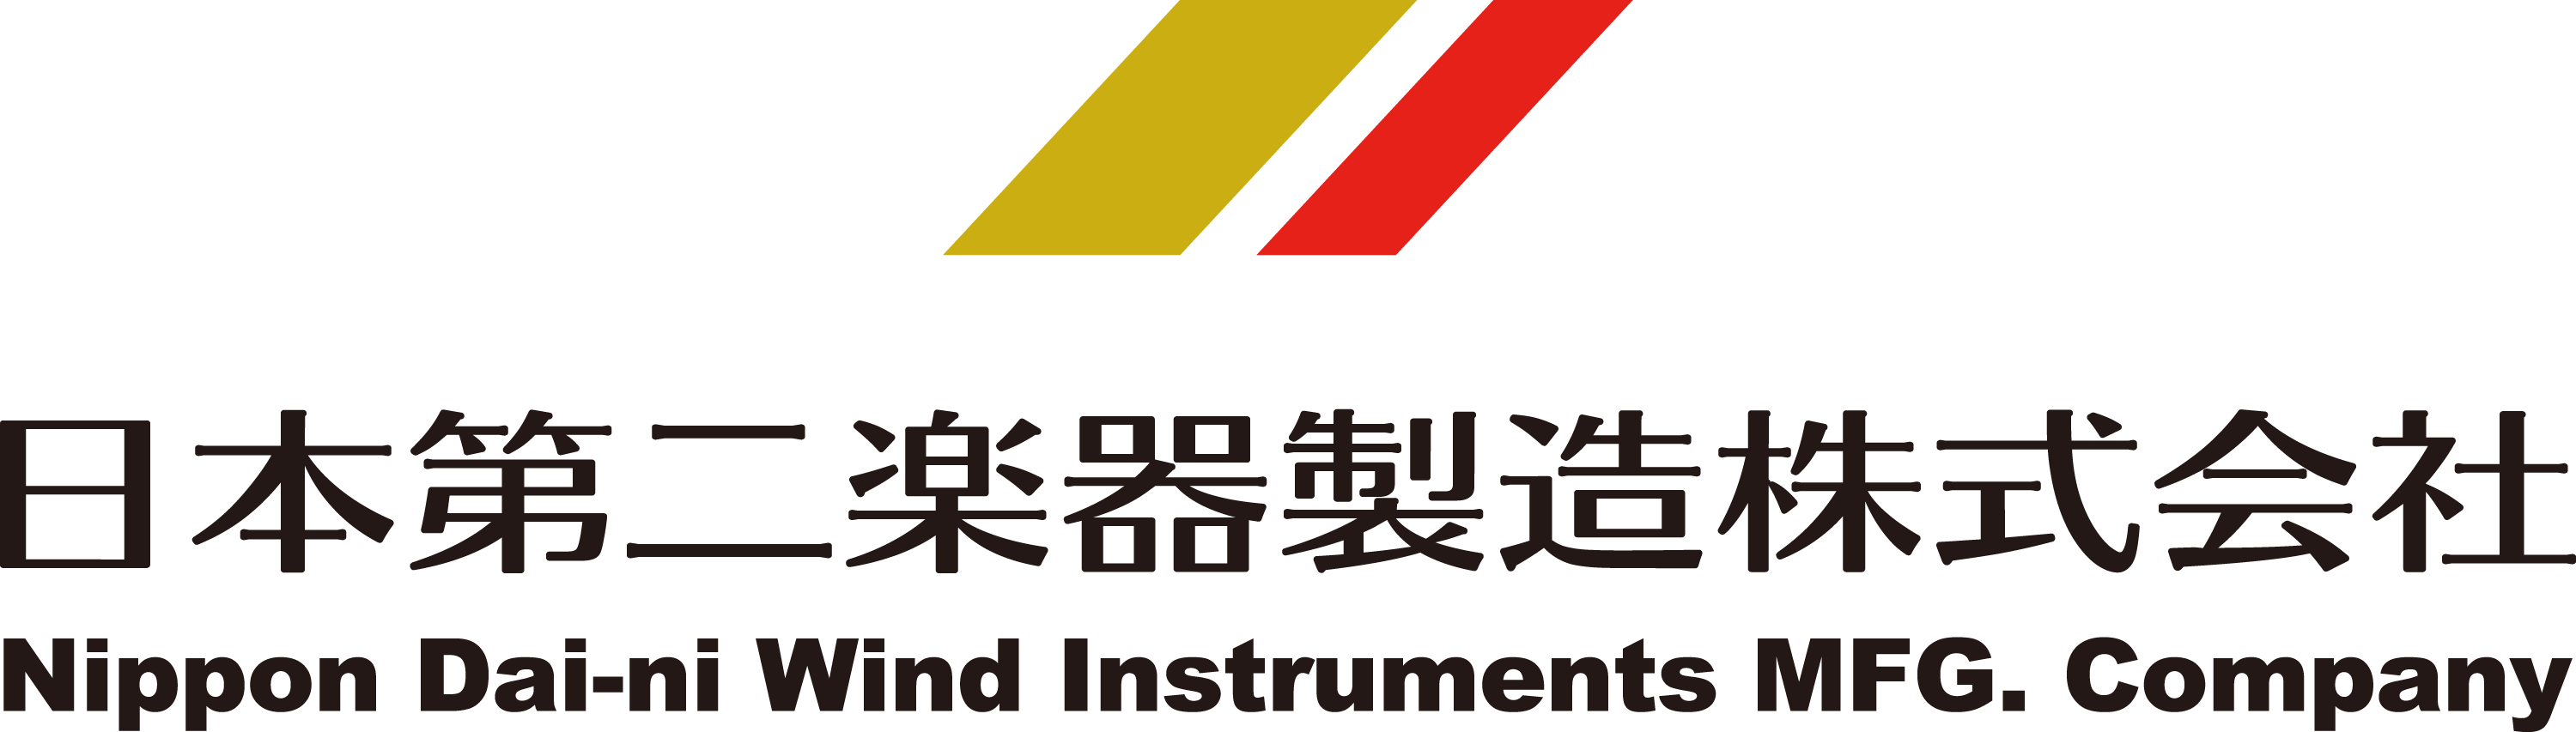 日本第二楽器製造株式会社